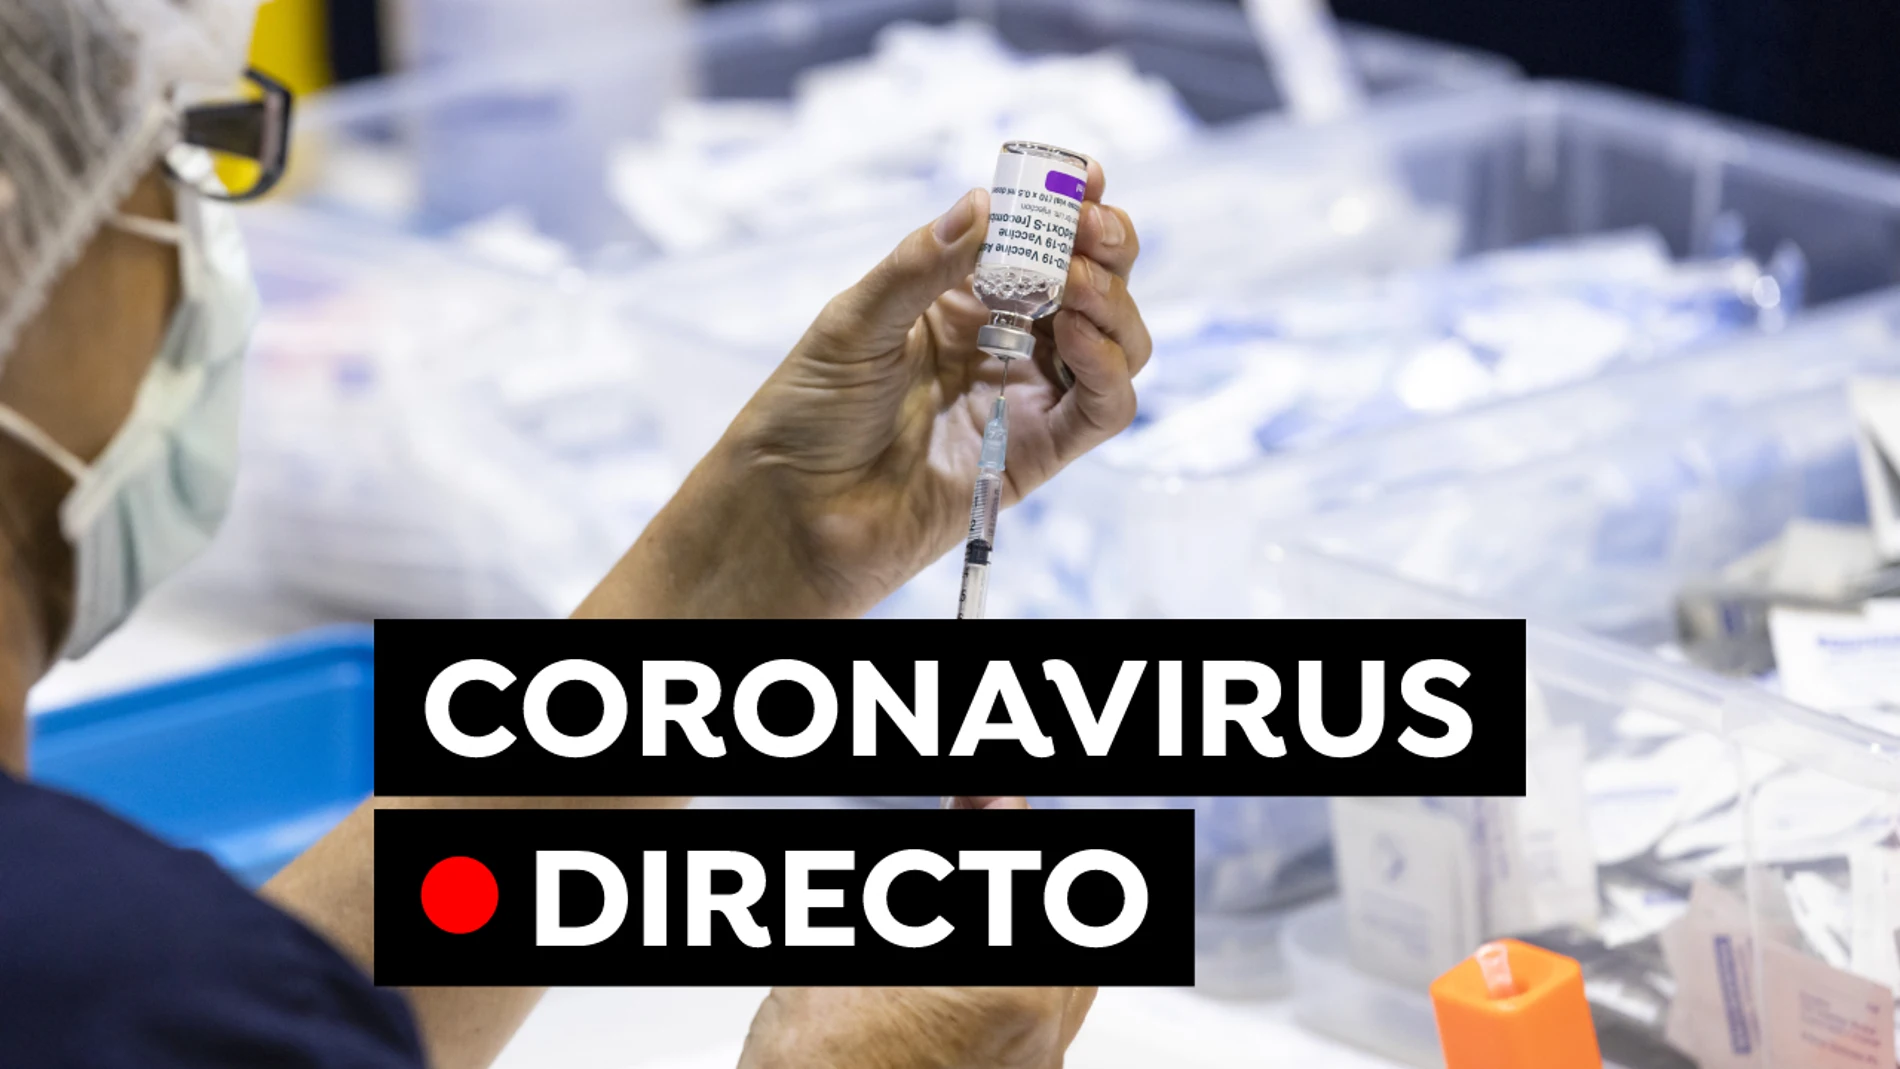 Coronavirus en España: Restricciones, medidas y vacuna contra el COVID-19 hoy, en directo